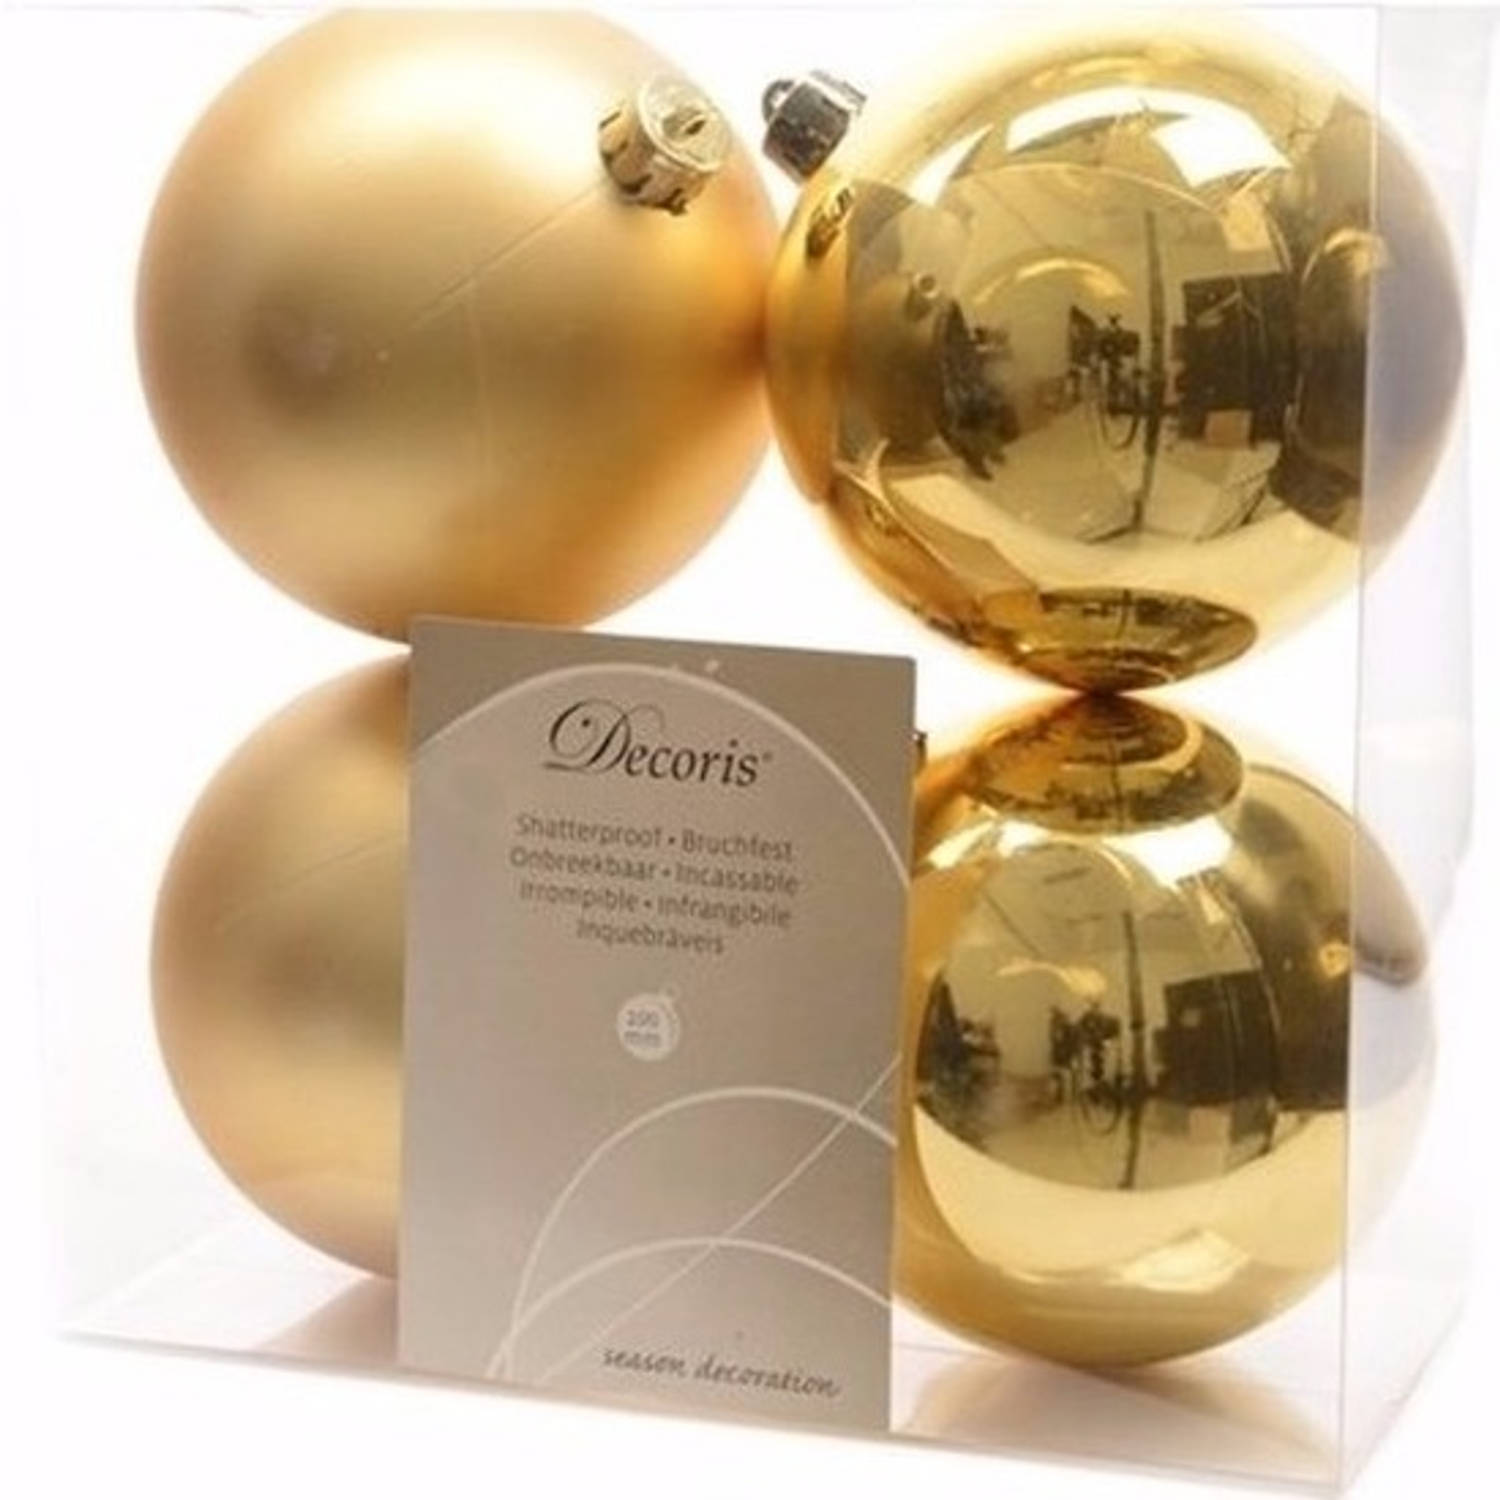 Chique Christmas kerstboom decoratie kerstballen 10 cm goud 4 stuks - Kerstbal